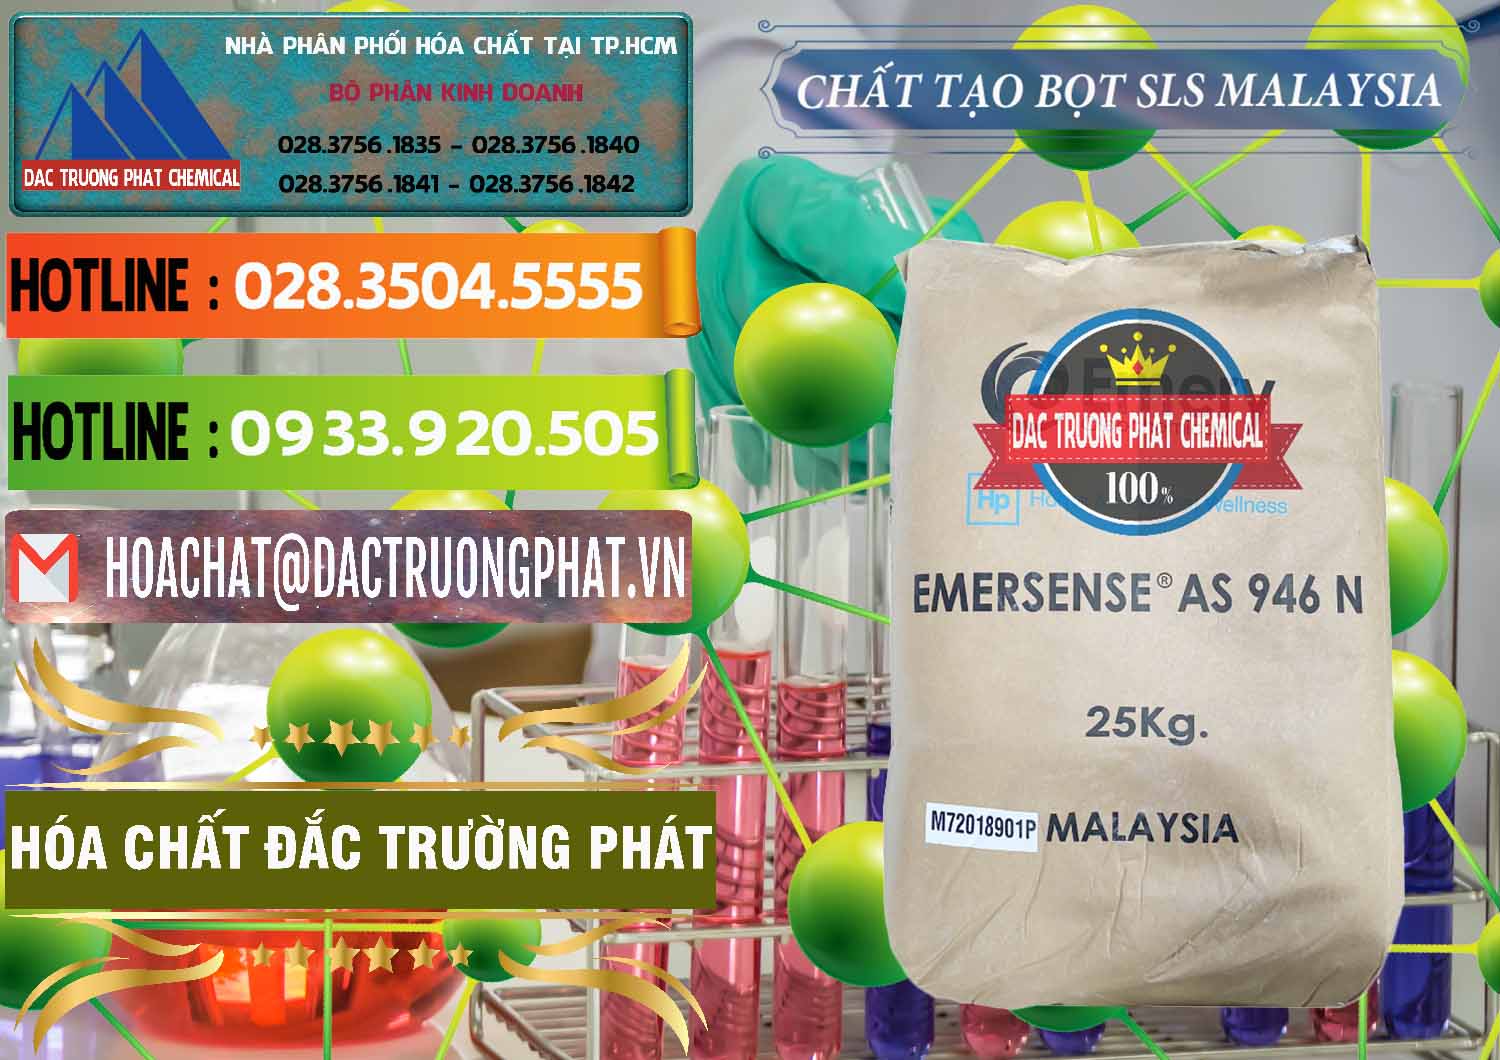 Công ty nhập khẩu - bán Chất Tạo Bọt SLS Emery - Emersense AS 946N Mã Lai Malaysia - 0423 - Đơn vị phân phối & cung cấp hóa chất tại TP.HCM - cungcaphoachat.com.vn